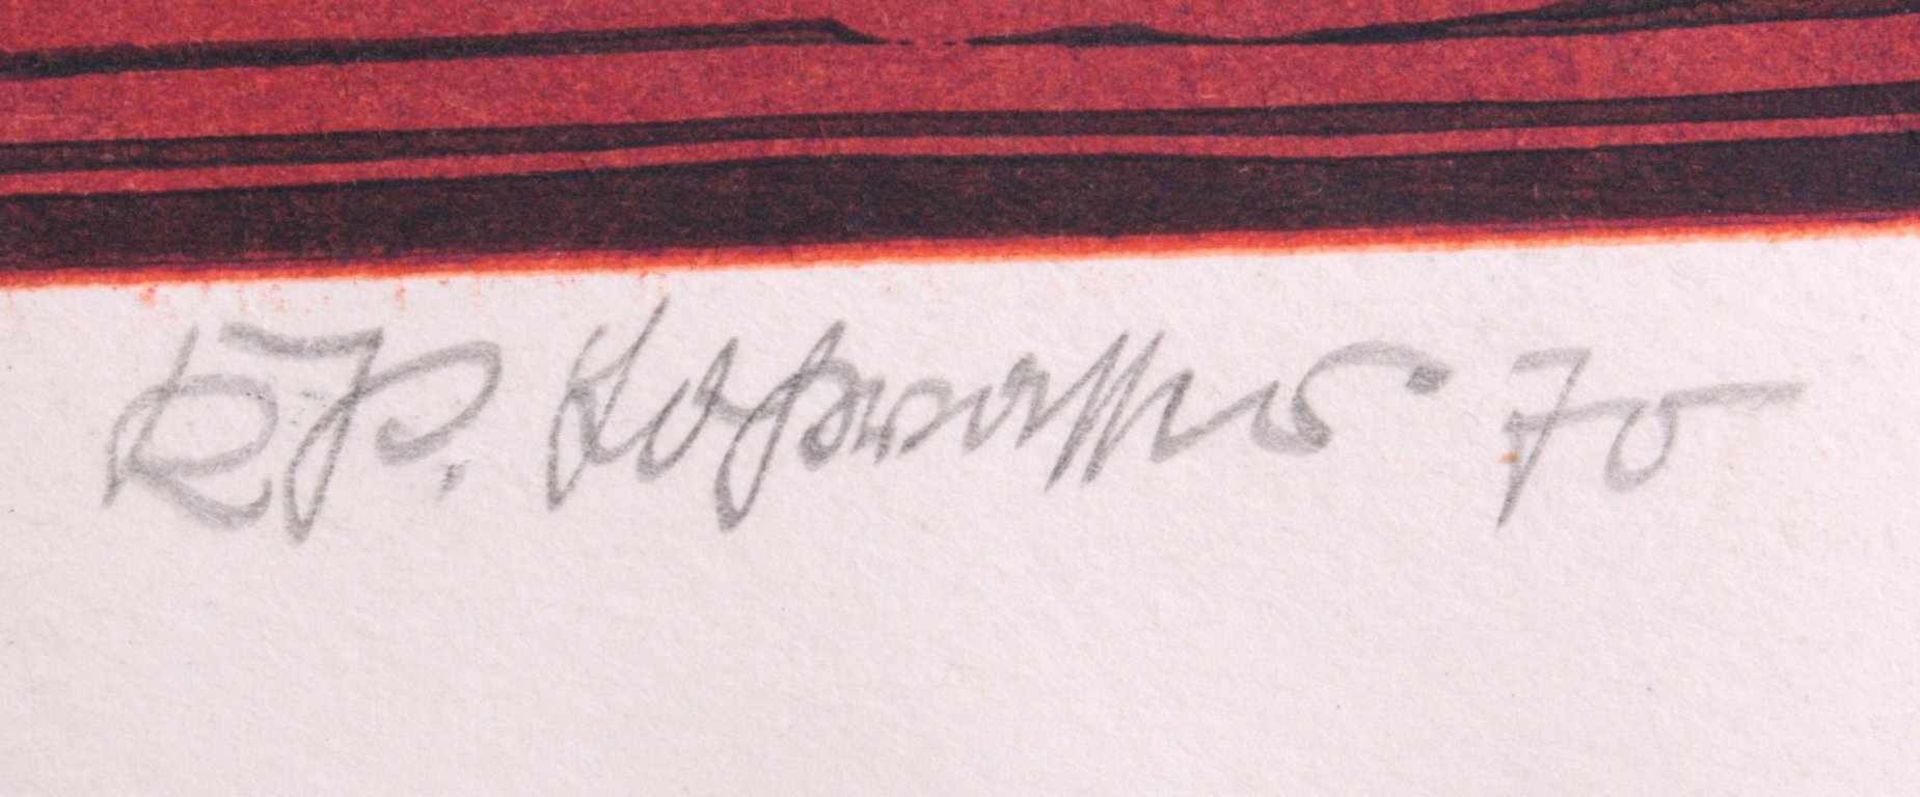 Farblithographie "Interieur"Unten rechts mit Bleistift signiert und datiert 70, 40/50,ca. 42 x 59 - Bild 2 aus 2